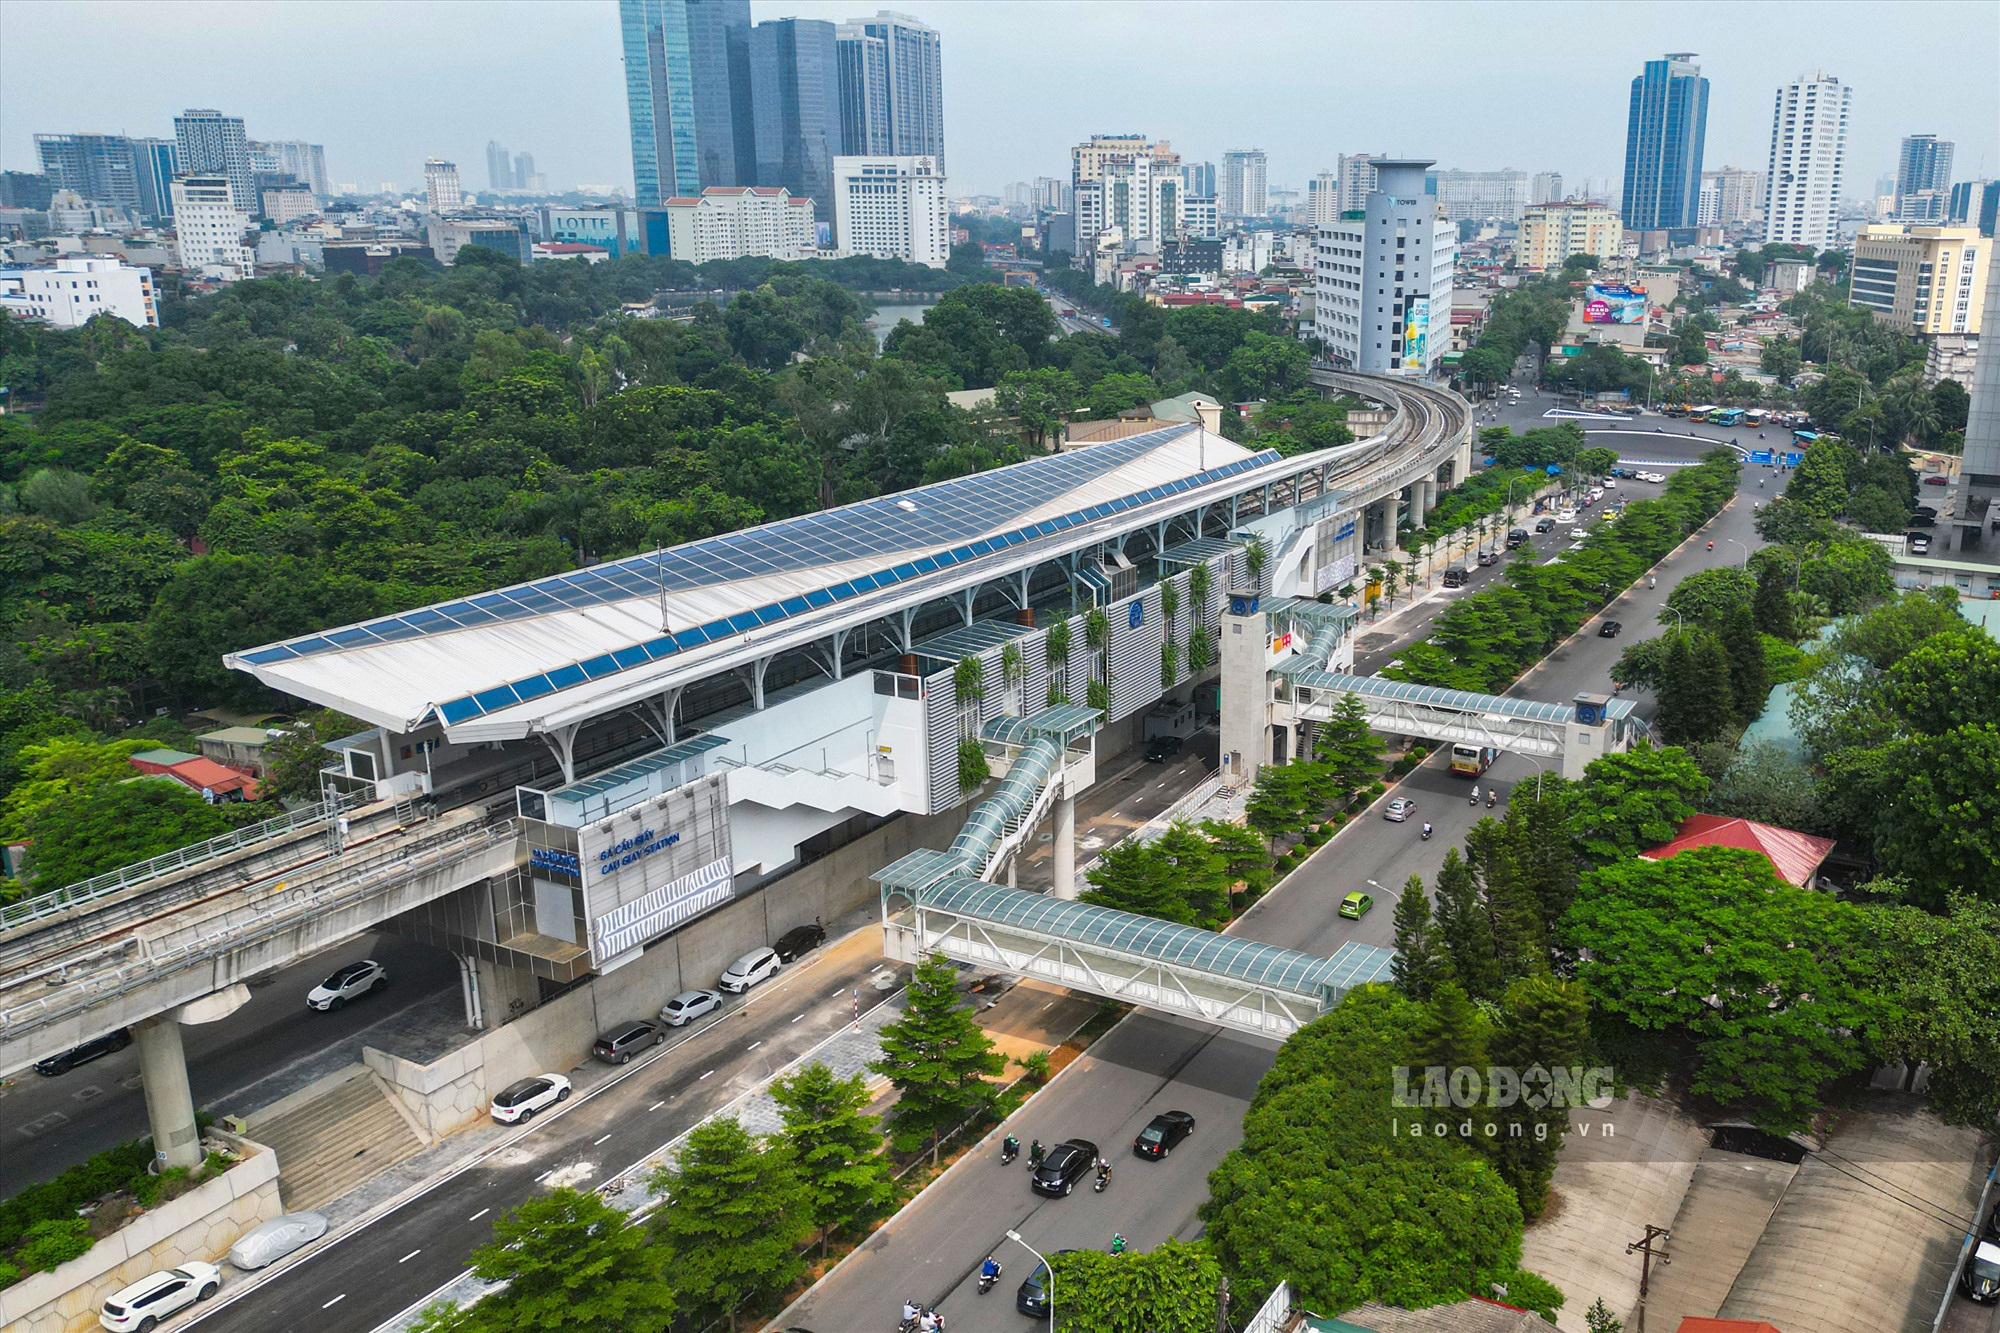 Được biết, trên dọc lộ trình tàu Nhổn - Ga Hà Nội hiện đang có 31 tuyến buýt hoạt động và đủ điều kiện kết nối với đoạn tuyến đường sắt trên cao Nhổn - Cầu Giấy. Dự kiến sẽ có thêm 12 tuyến buýt (3 tuyến được điều chỉnh) kết nối với ĐSĐT này.